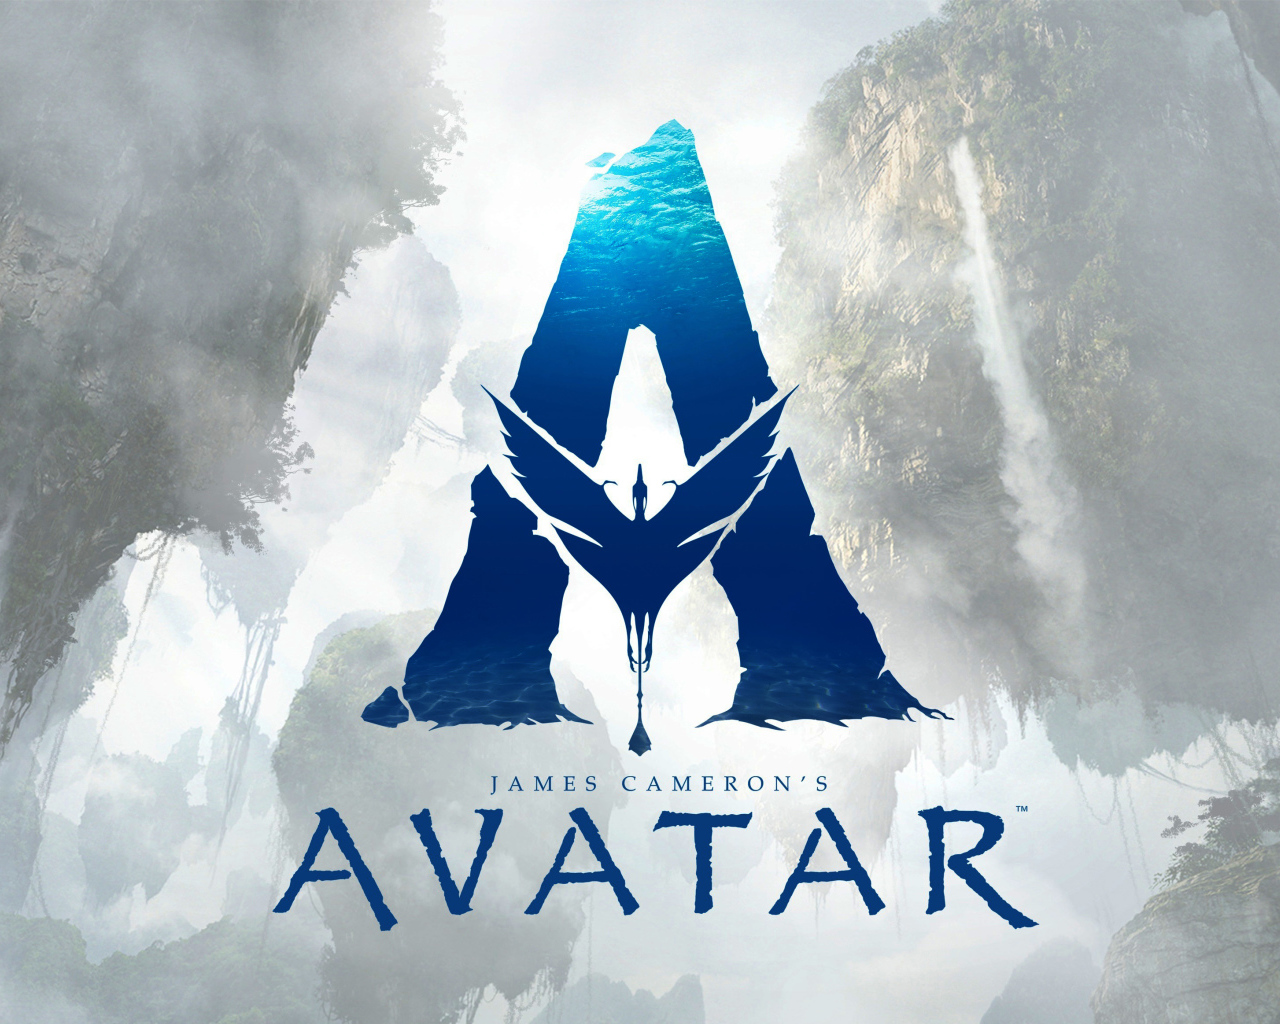 Логотип фильма фэнтези Аватар 2, 2020